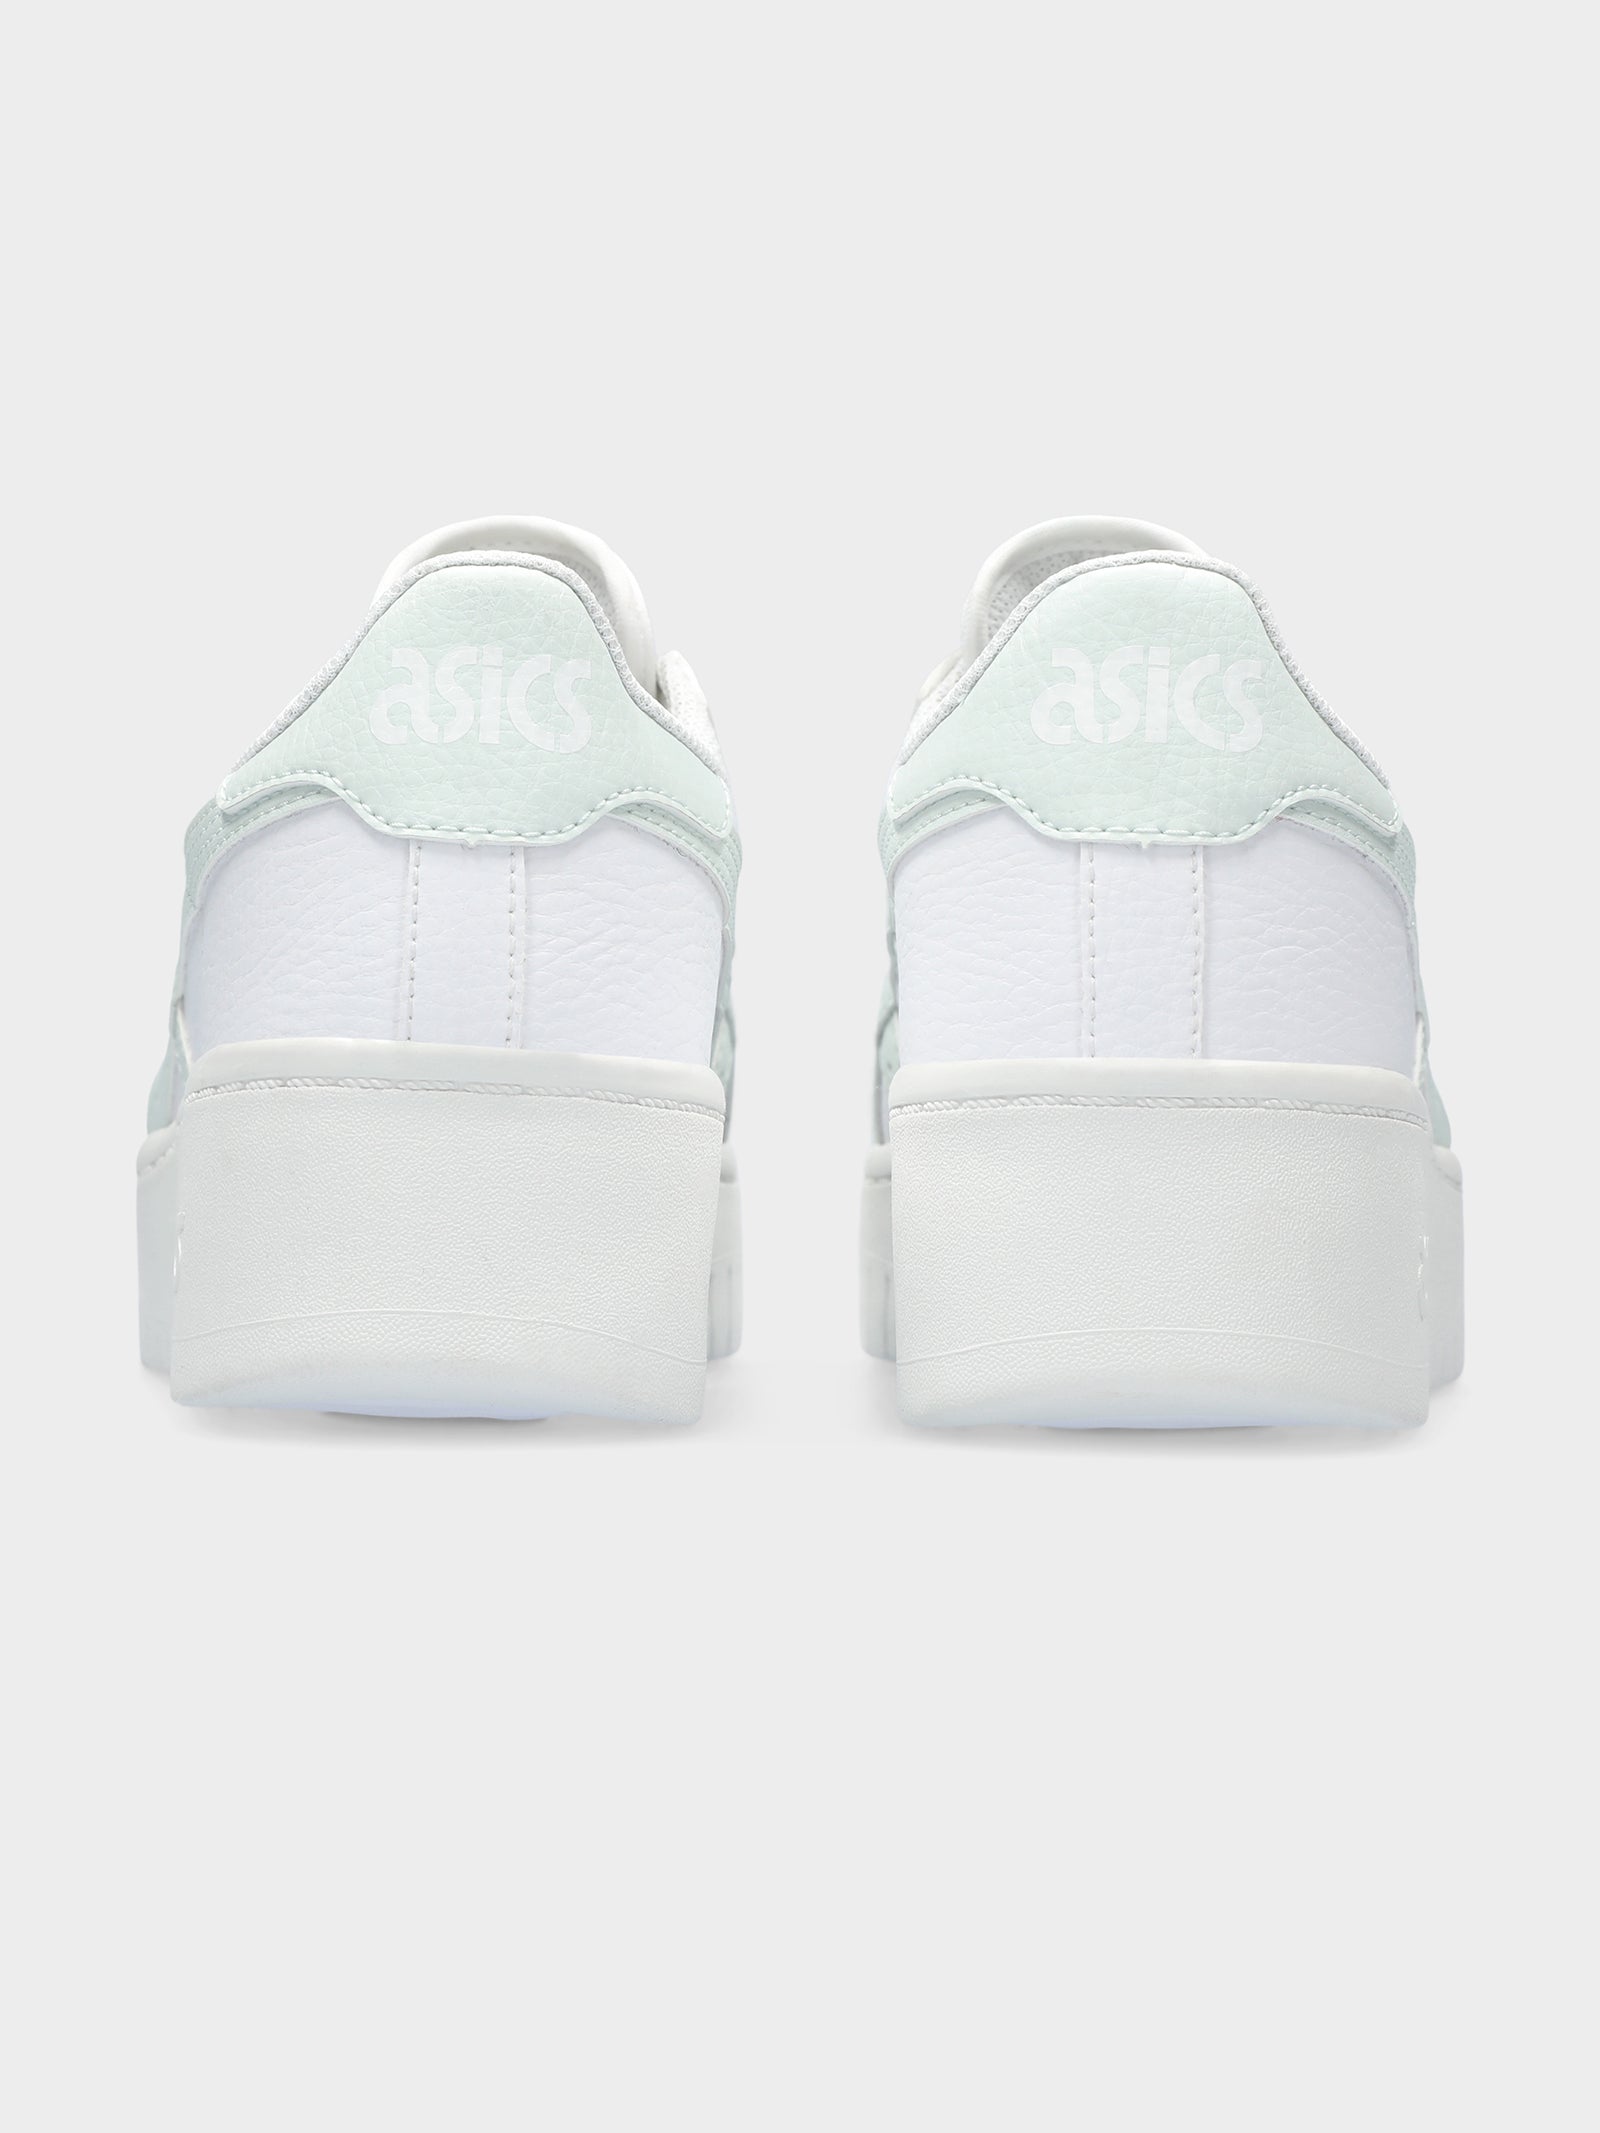 Womens Japan Platform Sneakers in White & Aqua